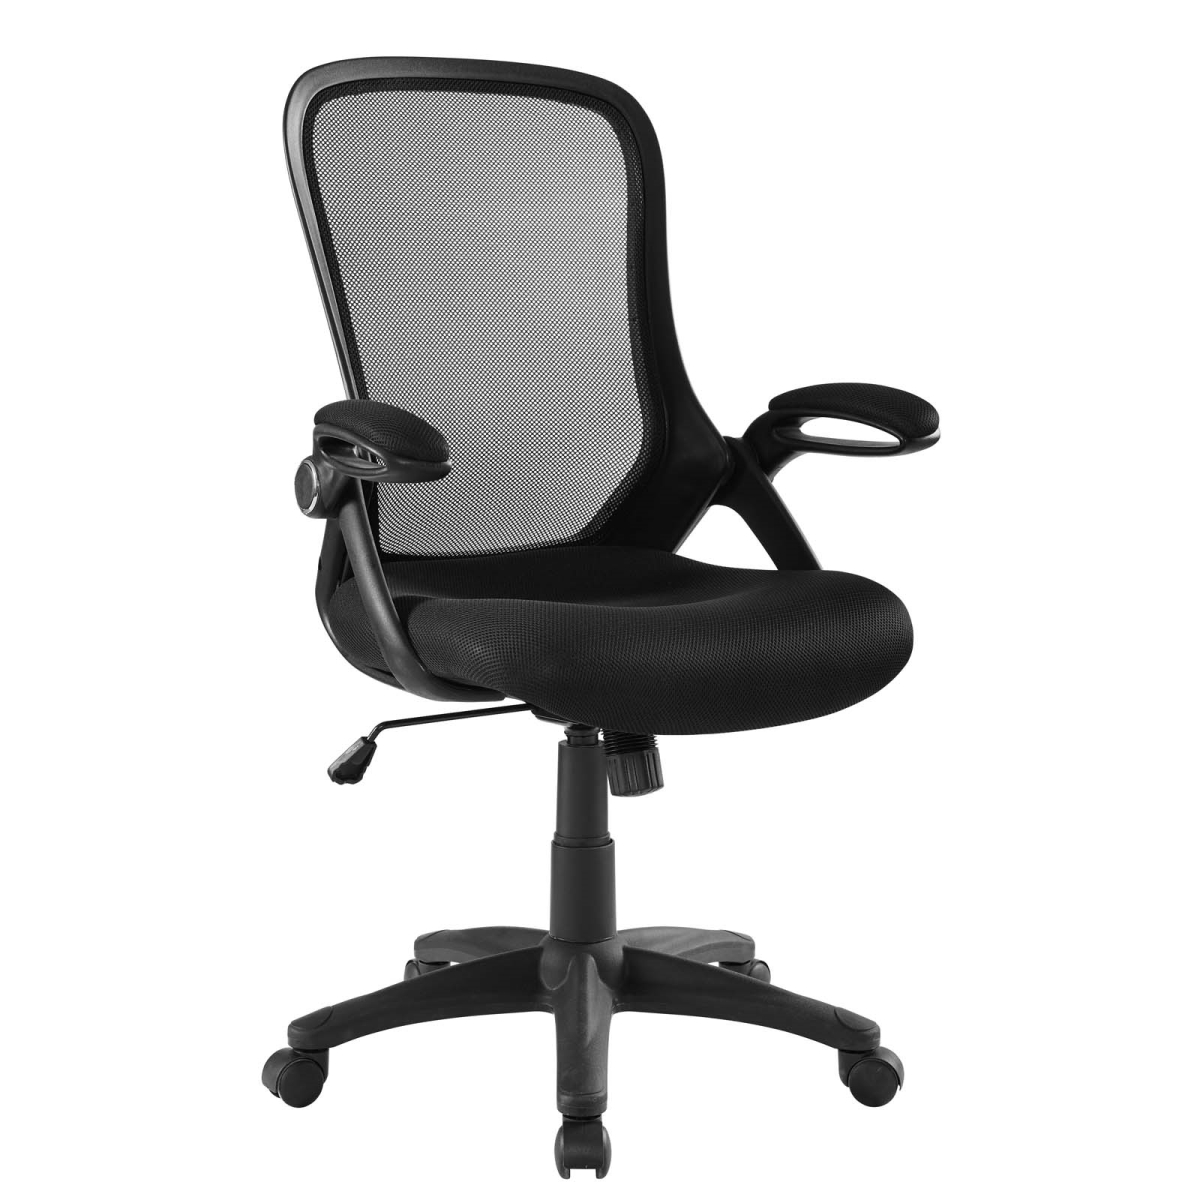 Eei-3189-blk Assert Mesh Office Chair - Black, 43.5 X 26.5 X 25.5 In.